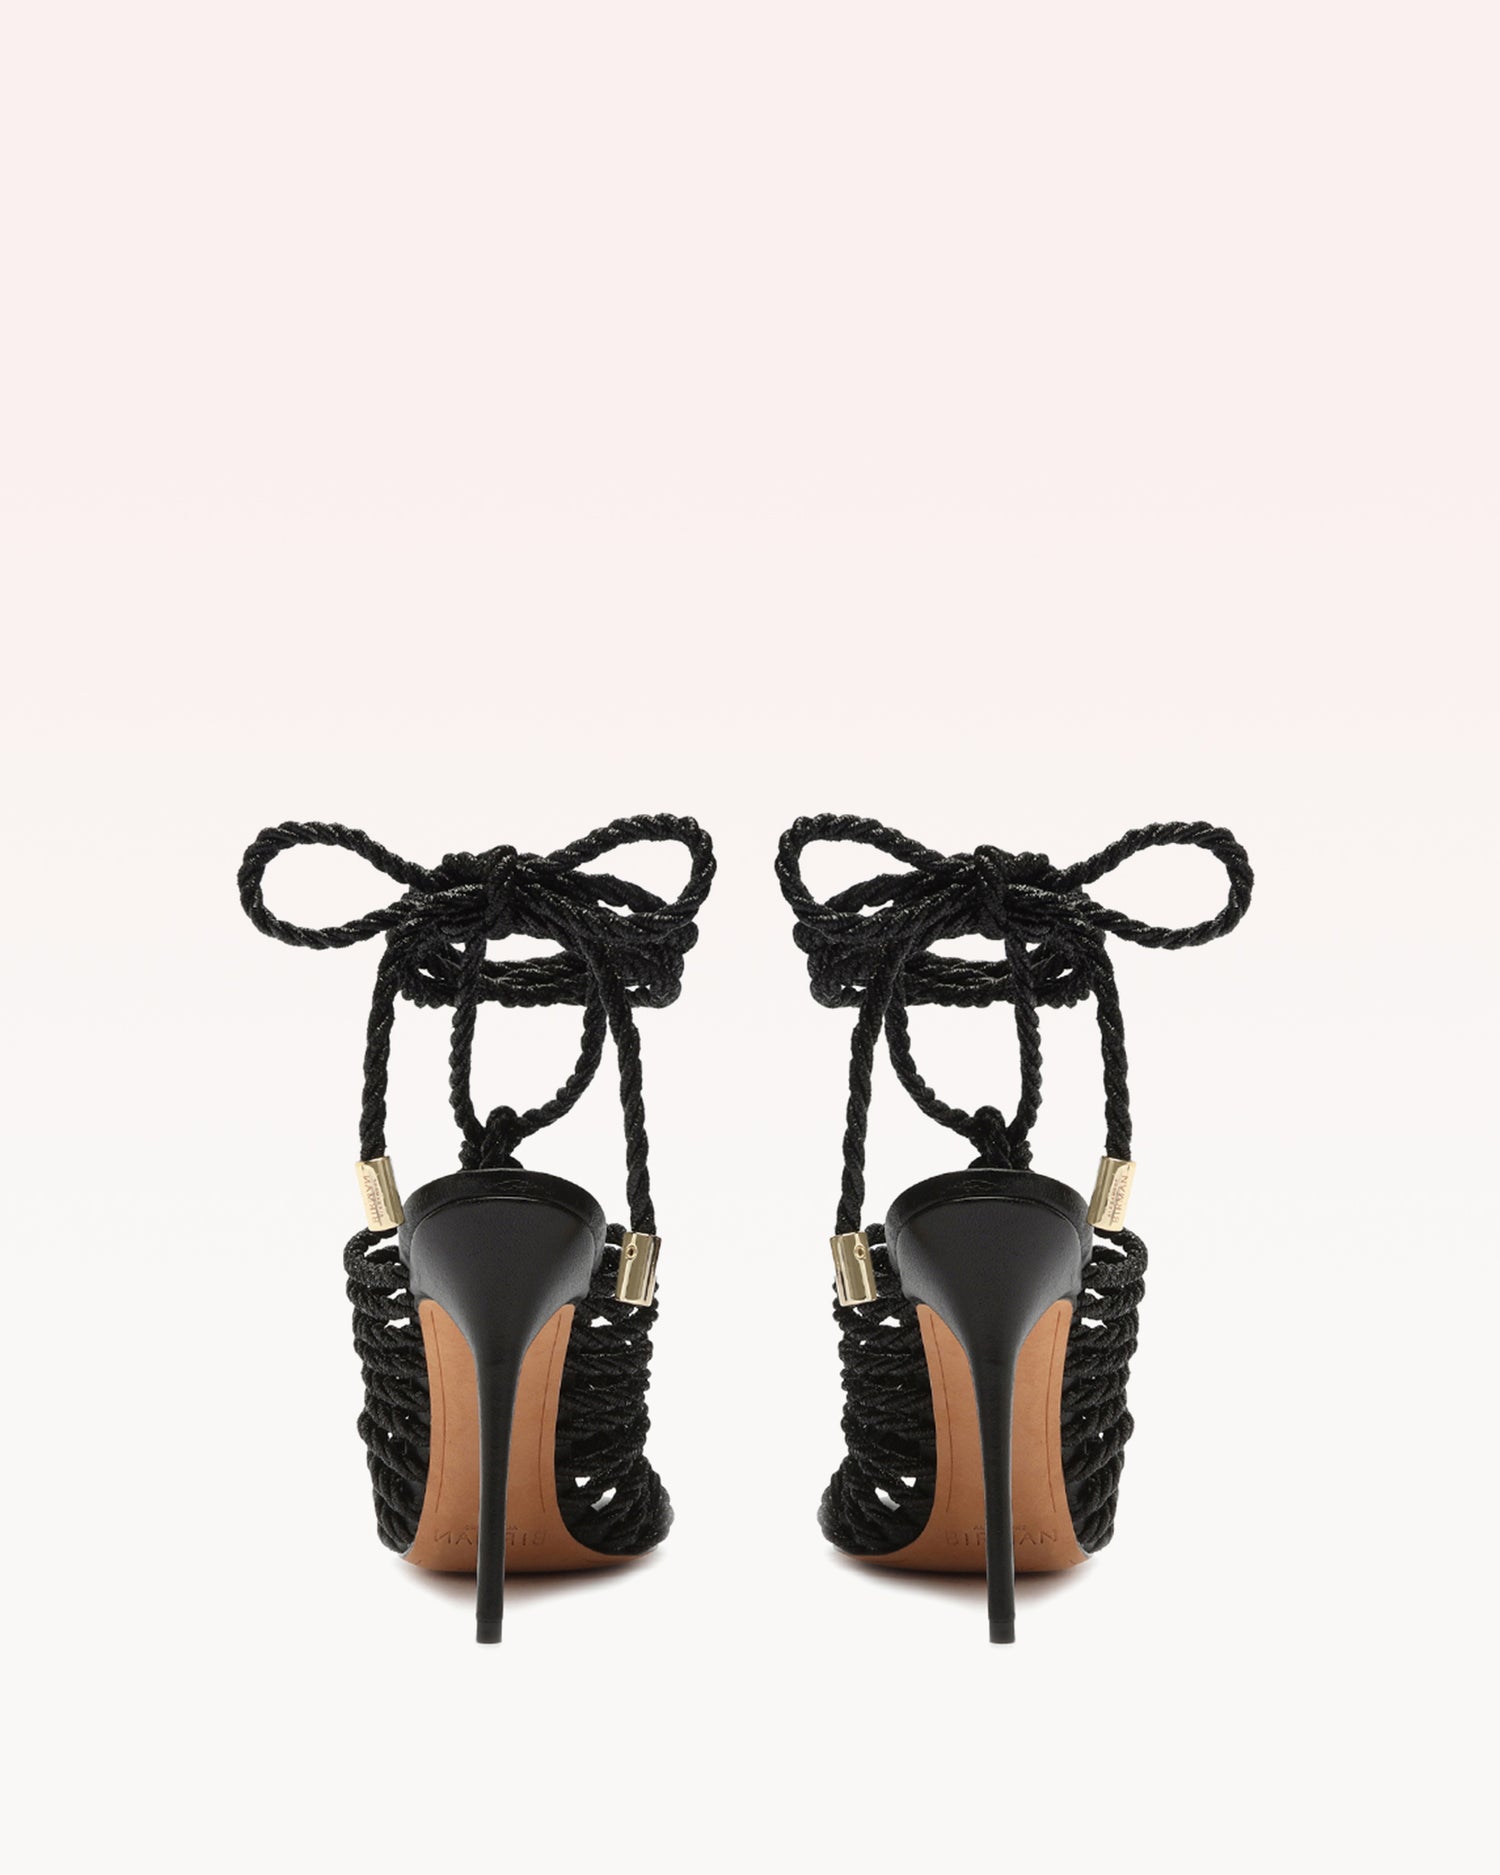 Barbara Lurex Black Sandals S/23   